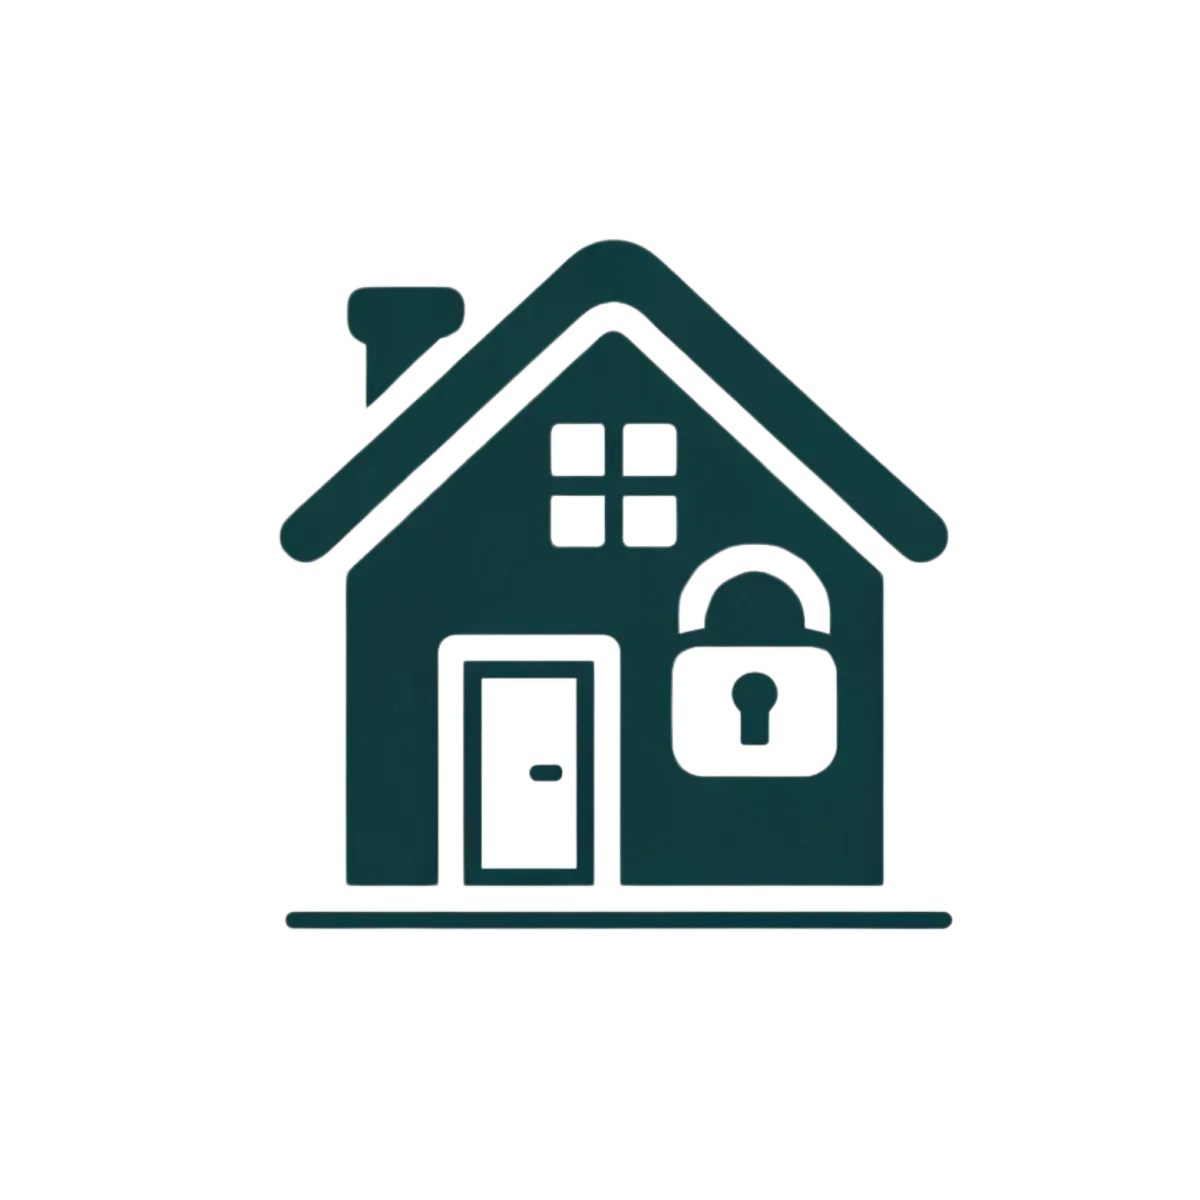 Home Insurance Logo